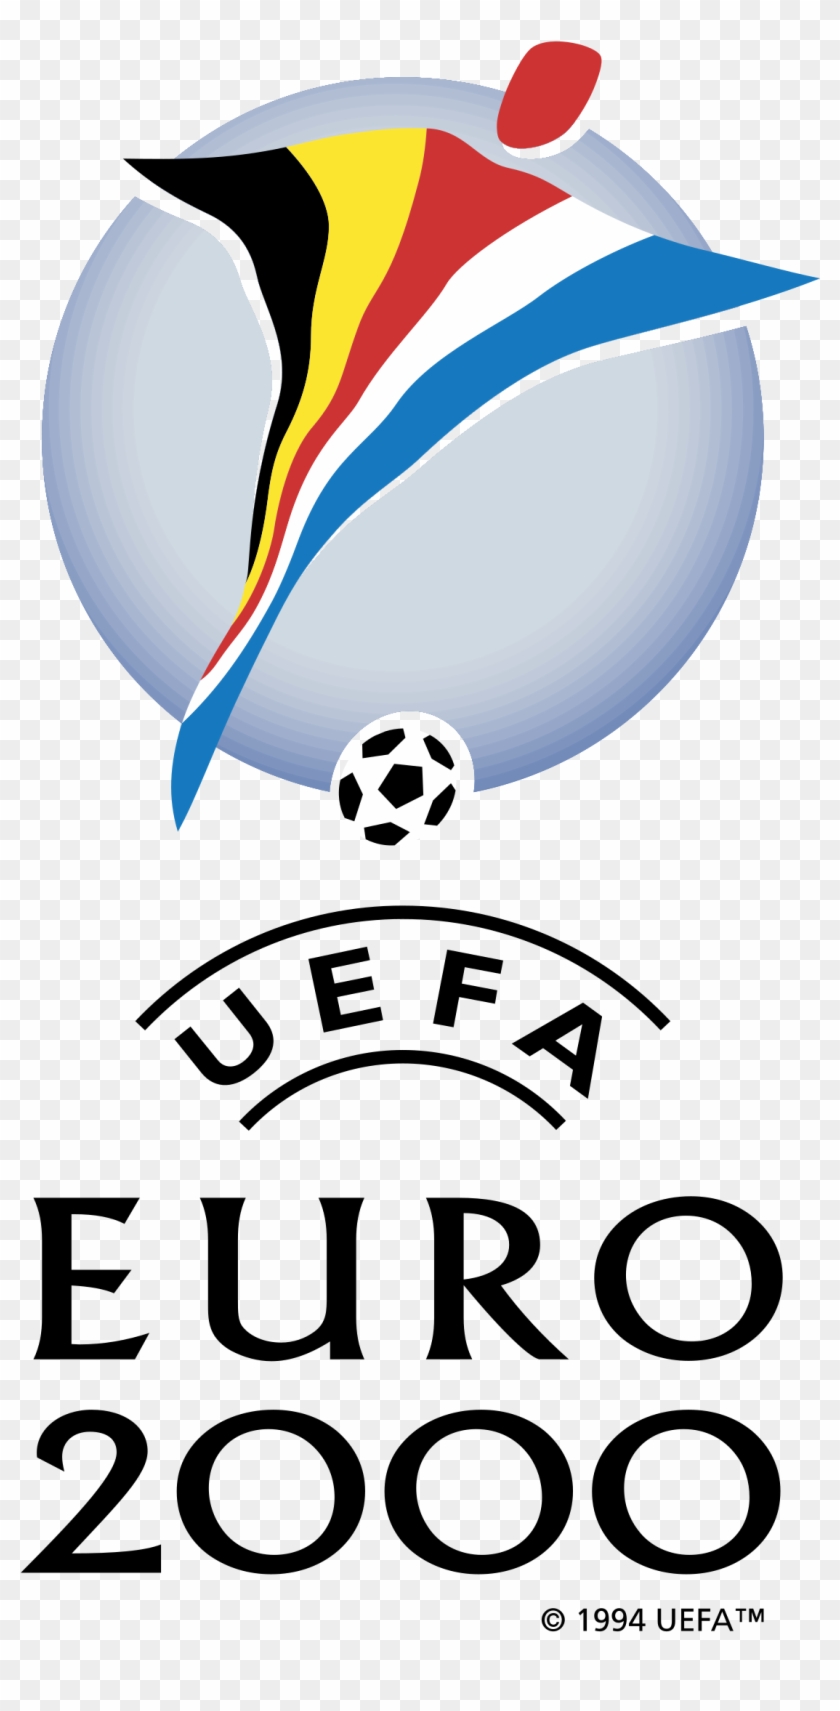 Uefa Euro 2000 Logo Black And White - Uefa Euro 2000 Logo #817805